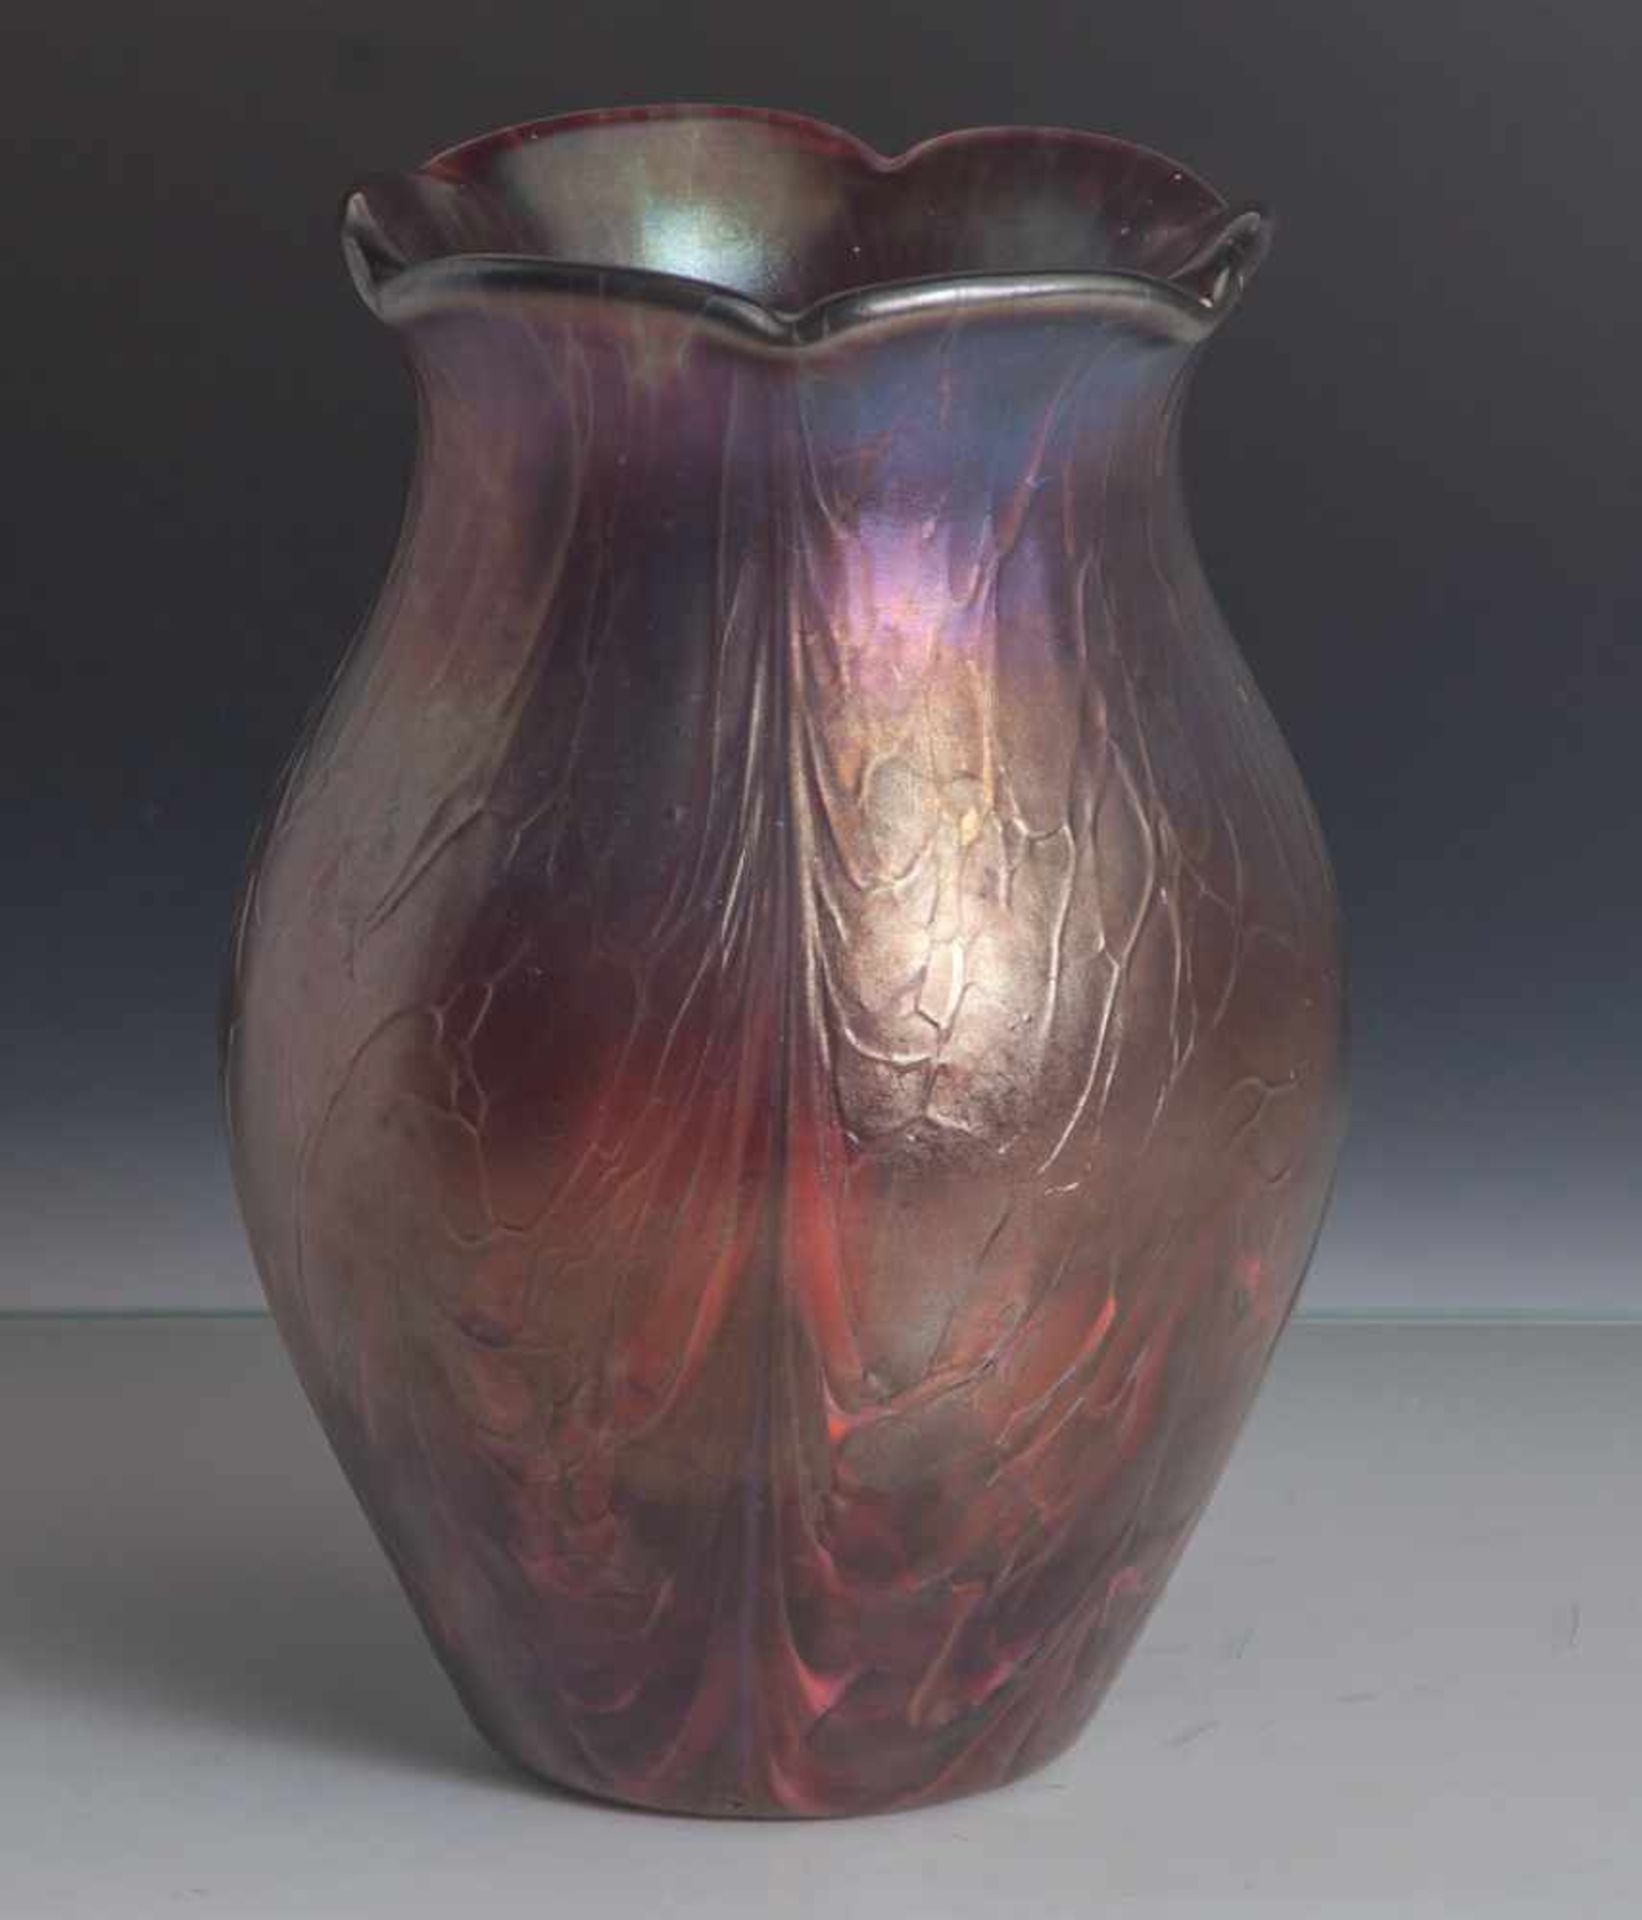 Vase, Jugendstilart, farbloses Glas, rötlich-braun überfangen, leichte Balusterform